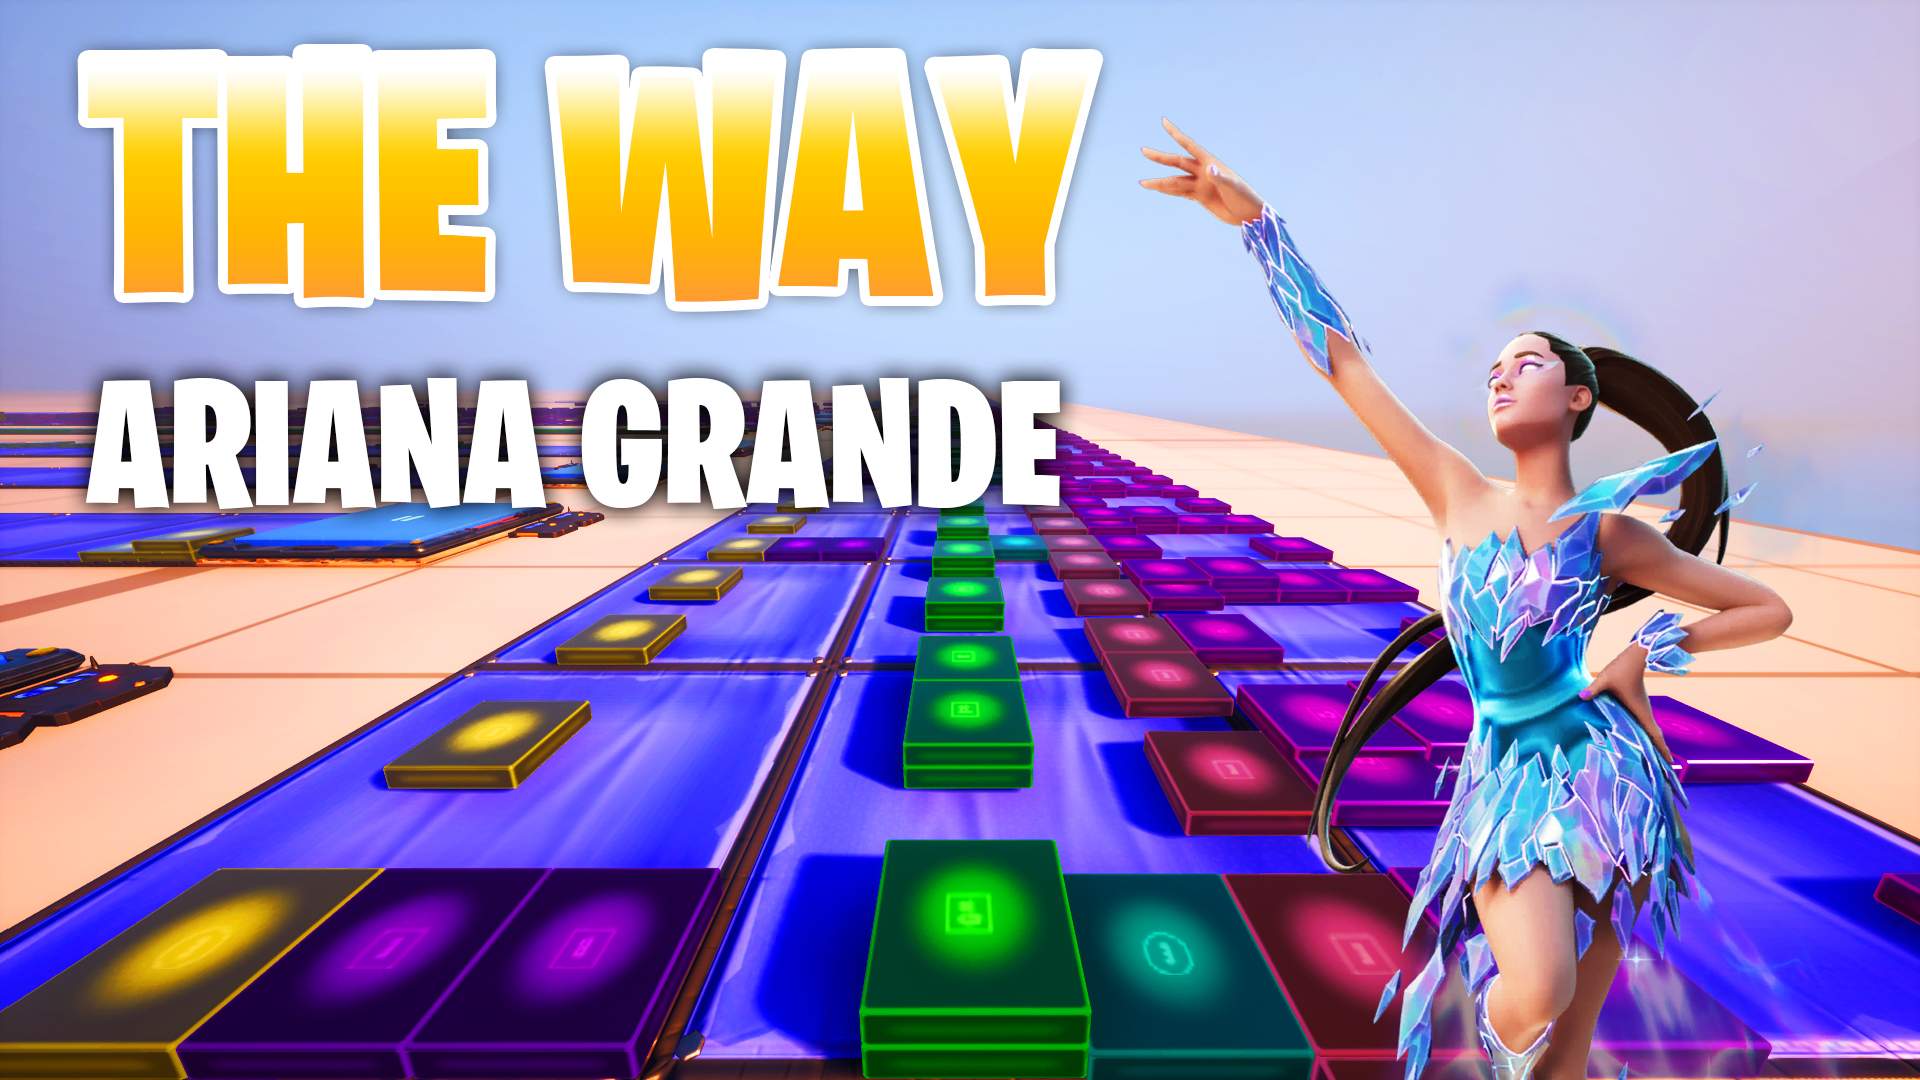 ARIANA GRANDE - THE WAY